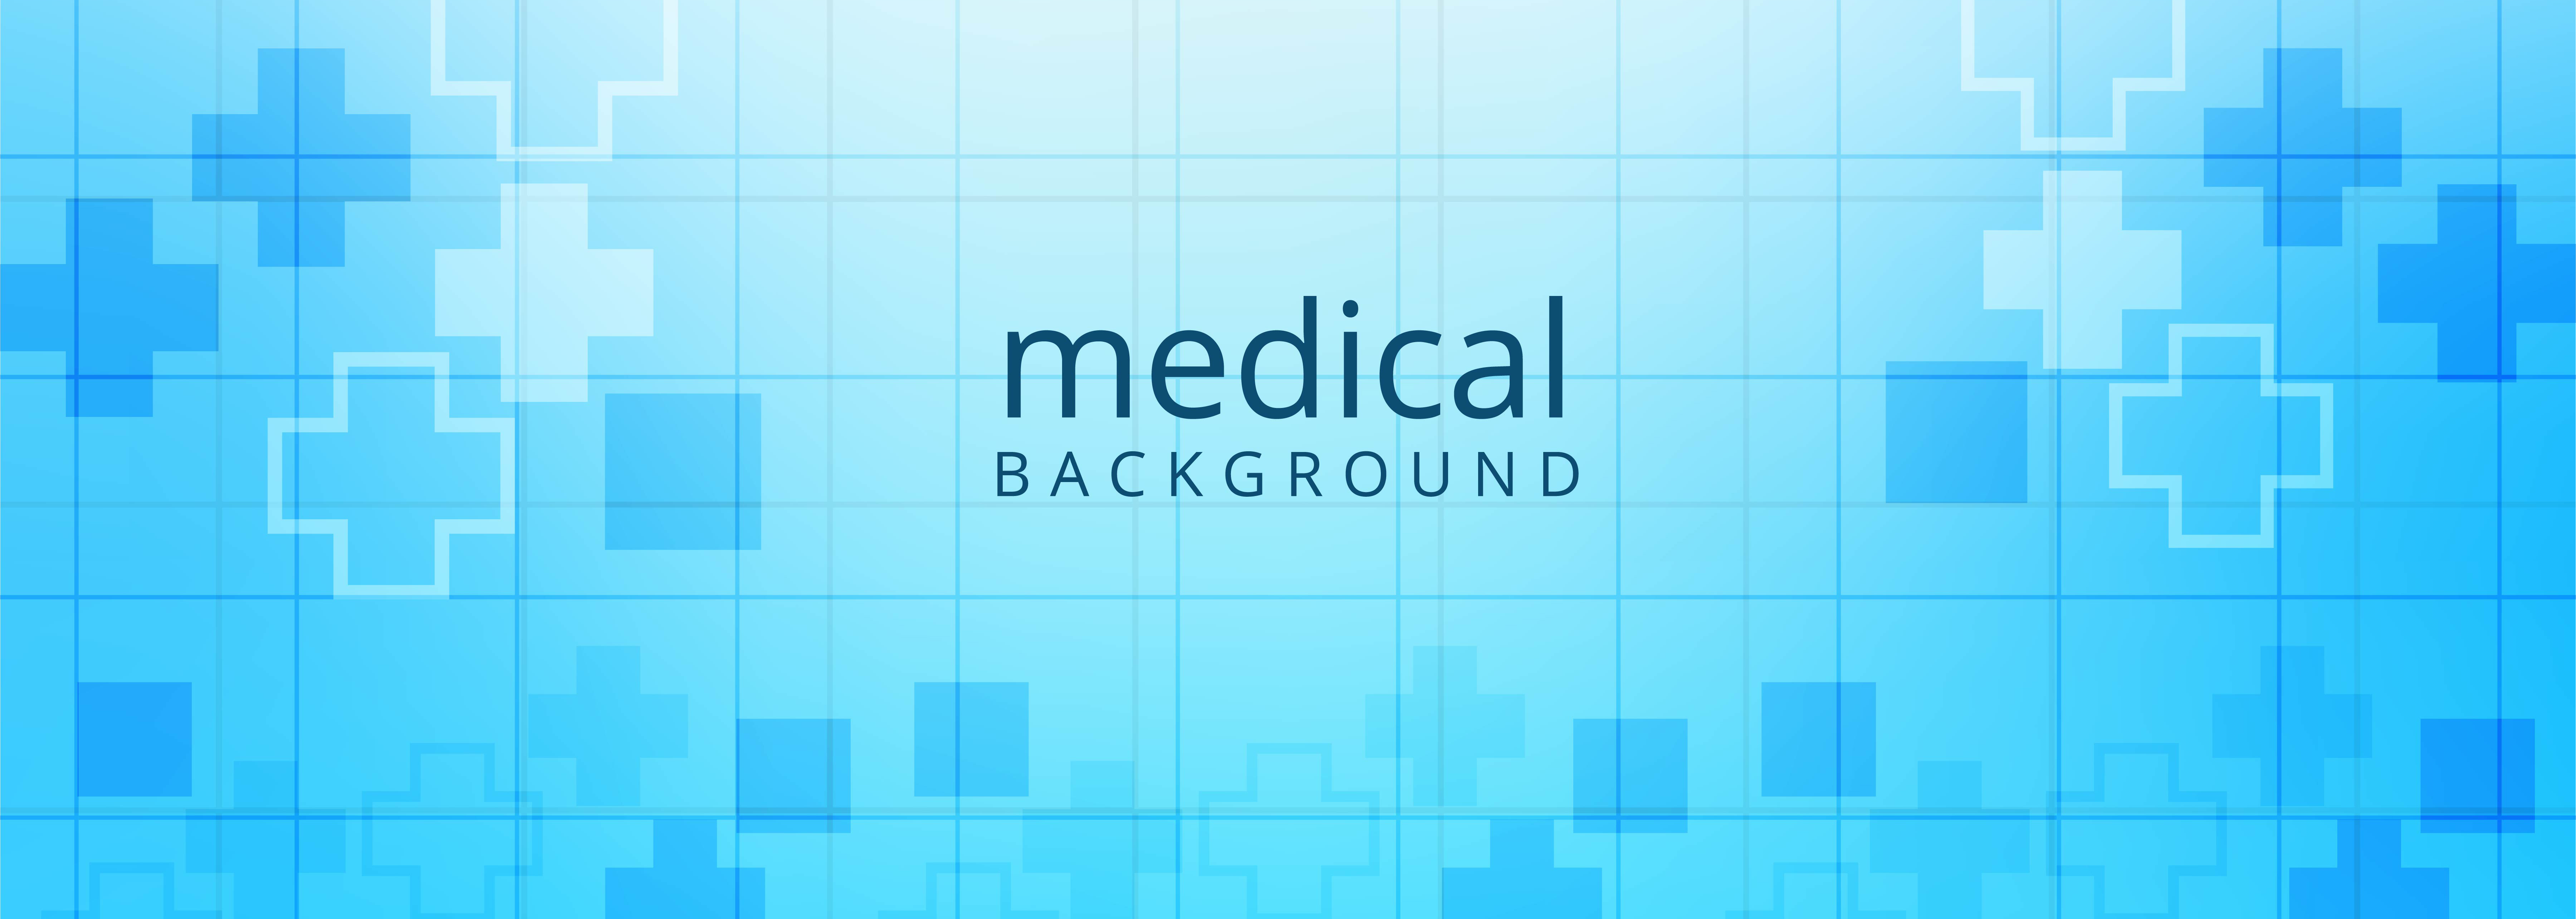 Details 100 medical banner background